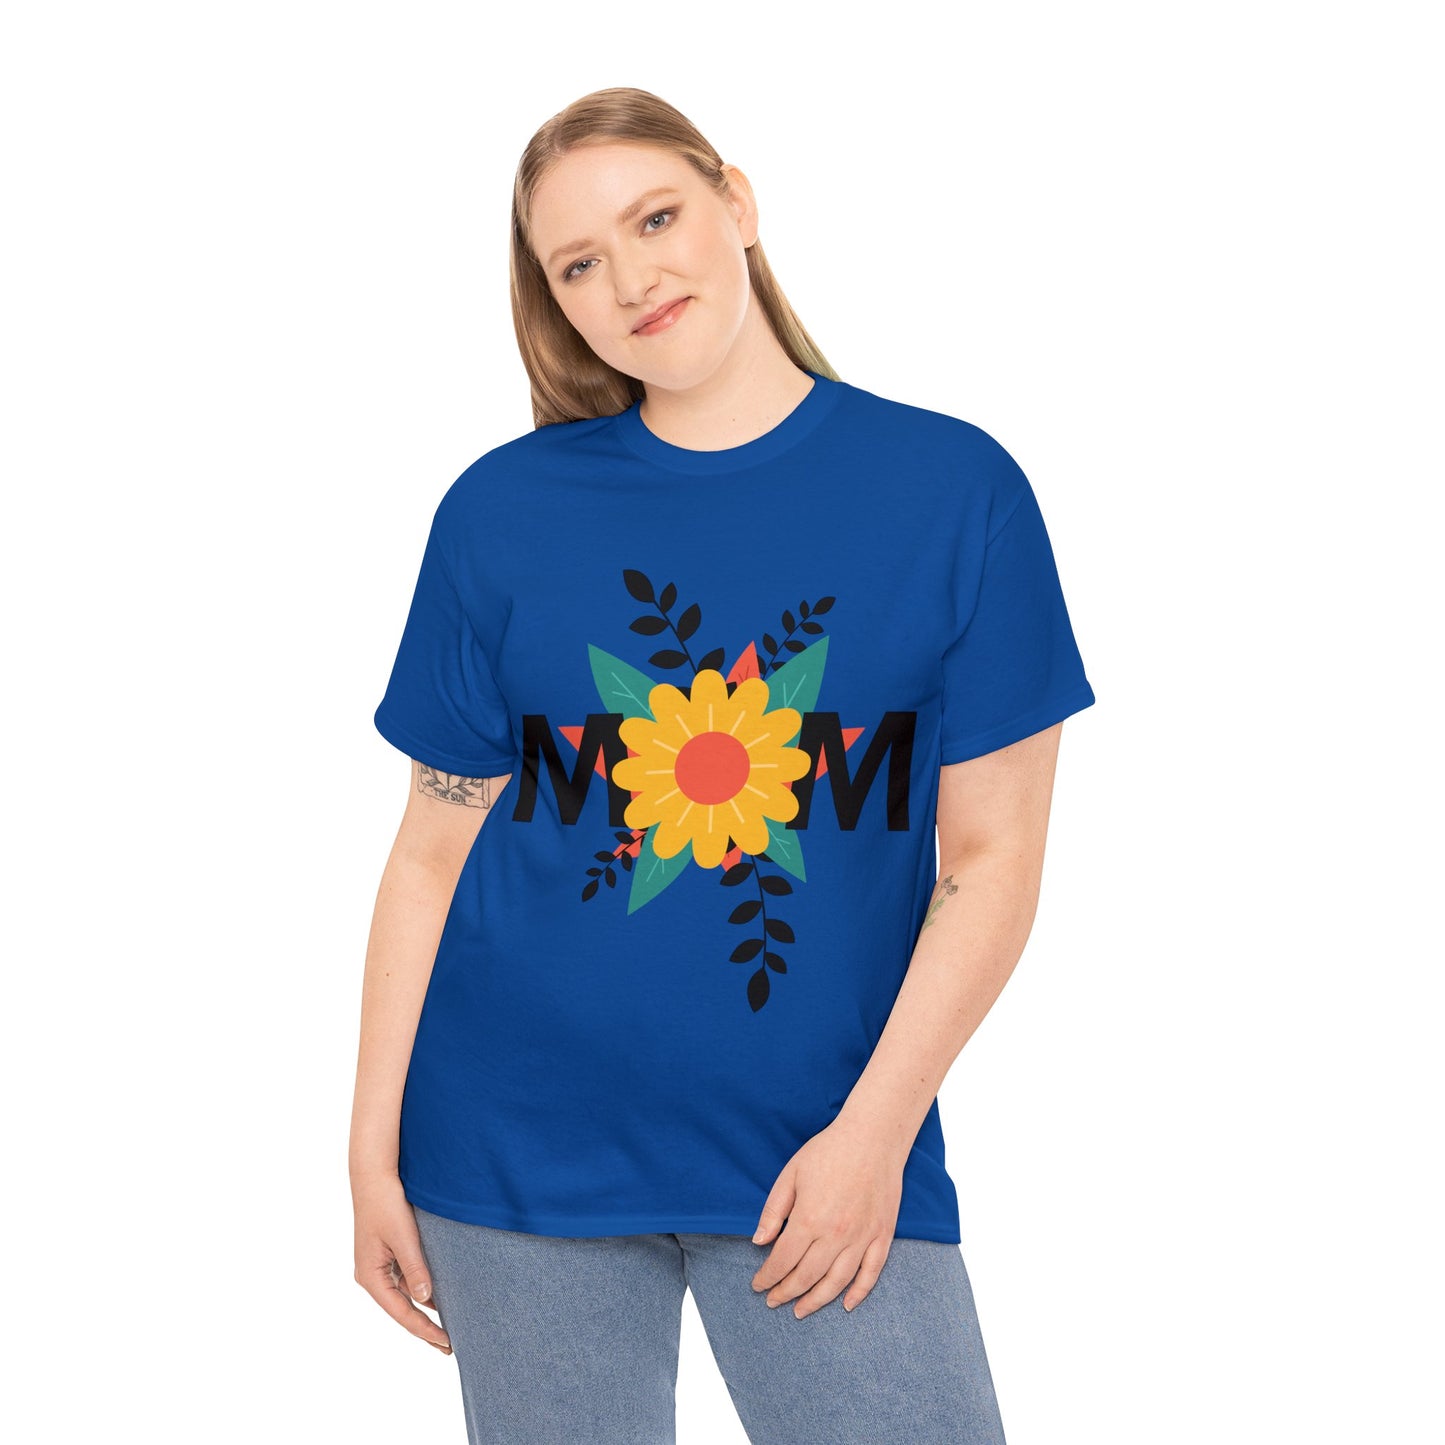 Mom Flowers T-Shirt